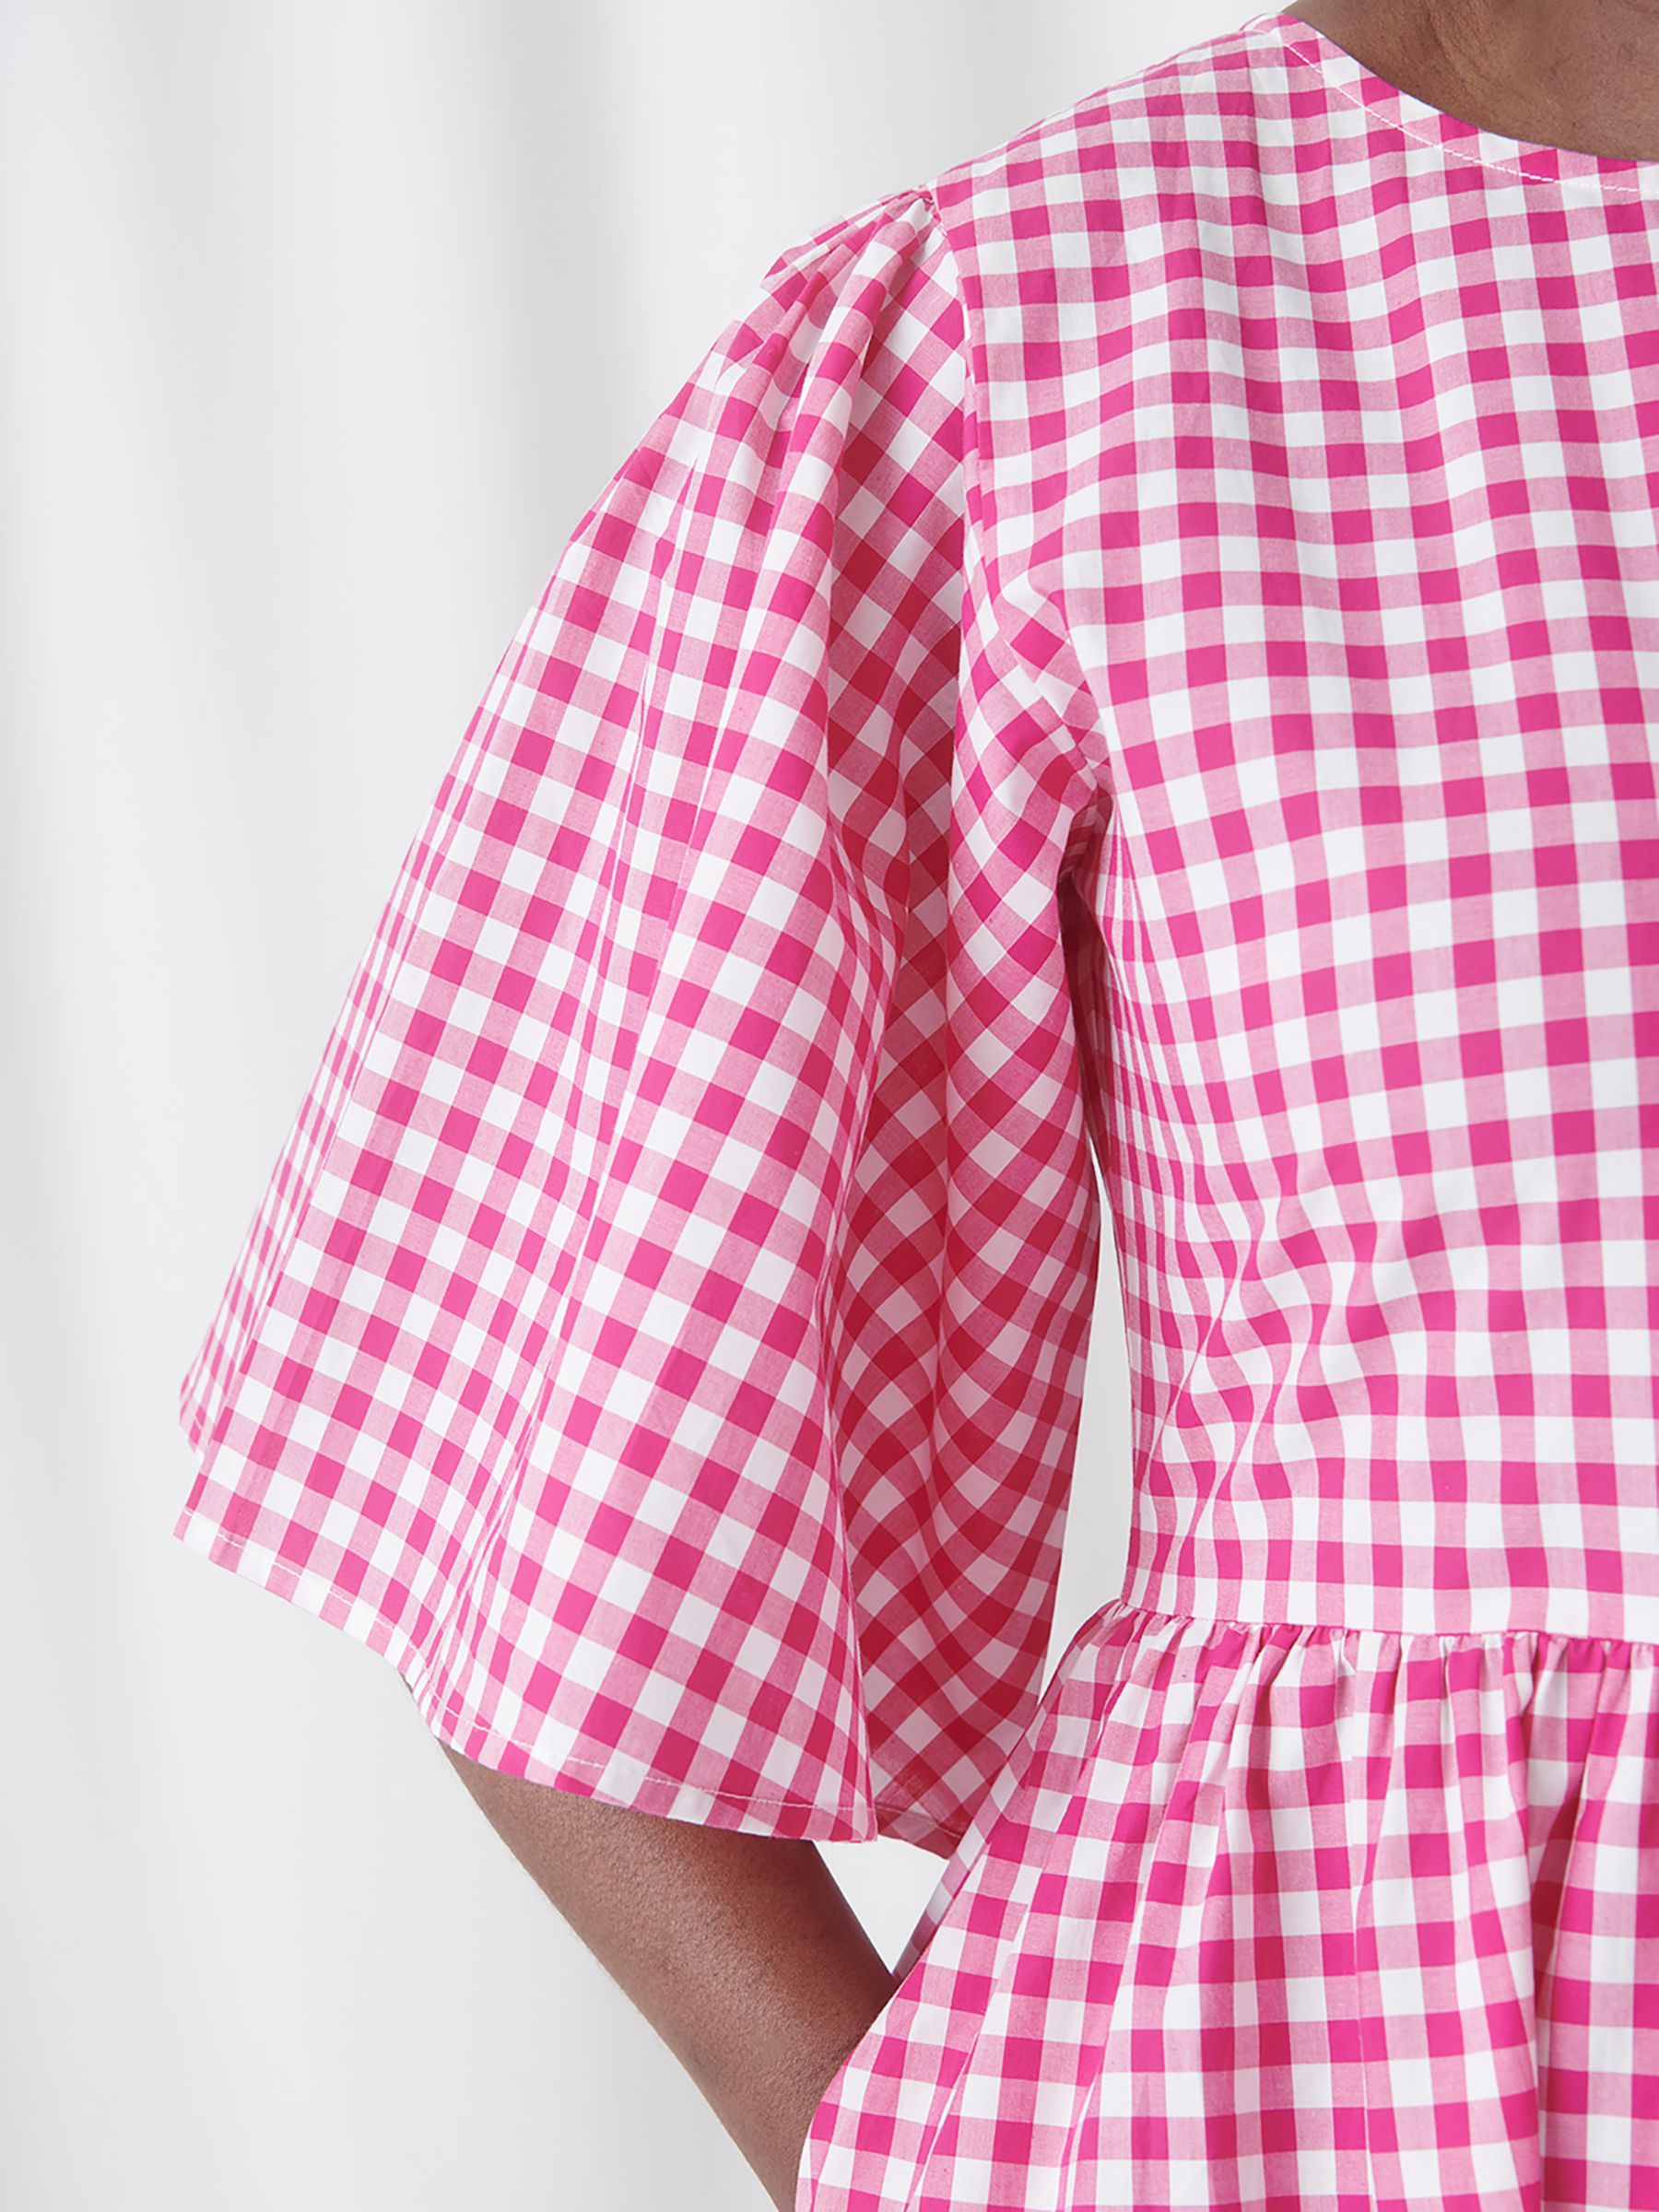 Kemi Telford Kate Check Print Cotton Midi Dress, Raspberry Pink, S